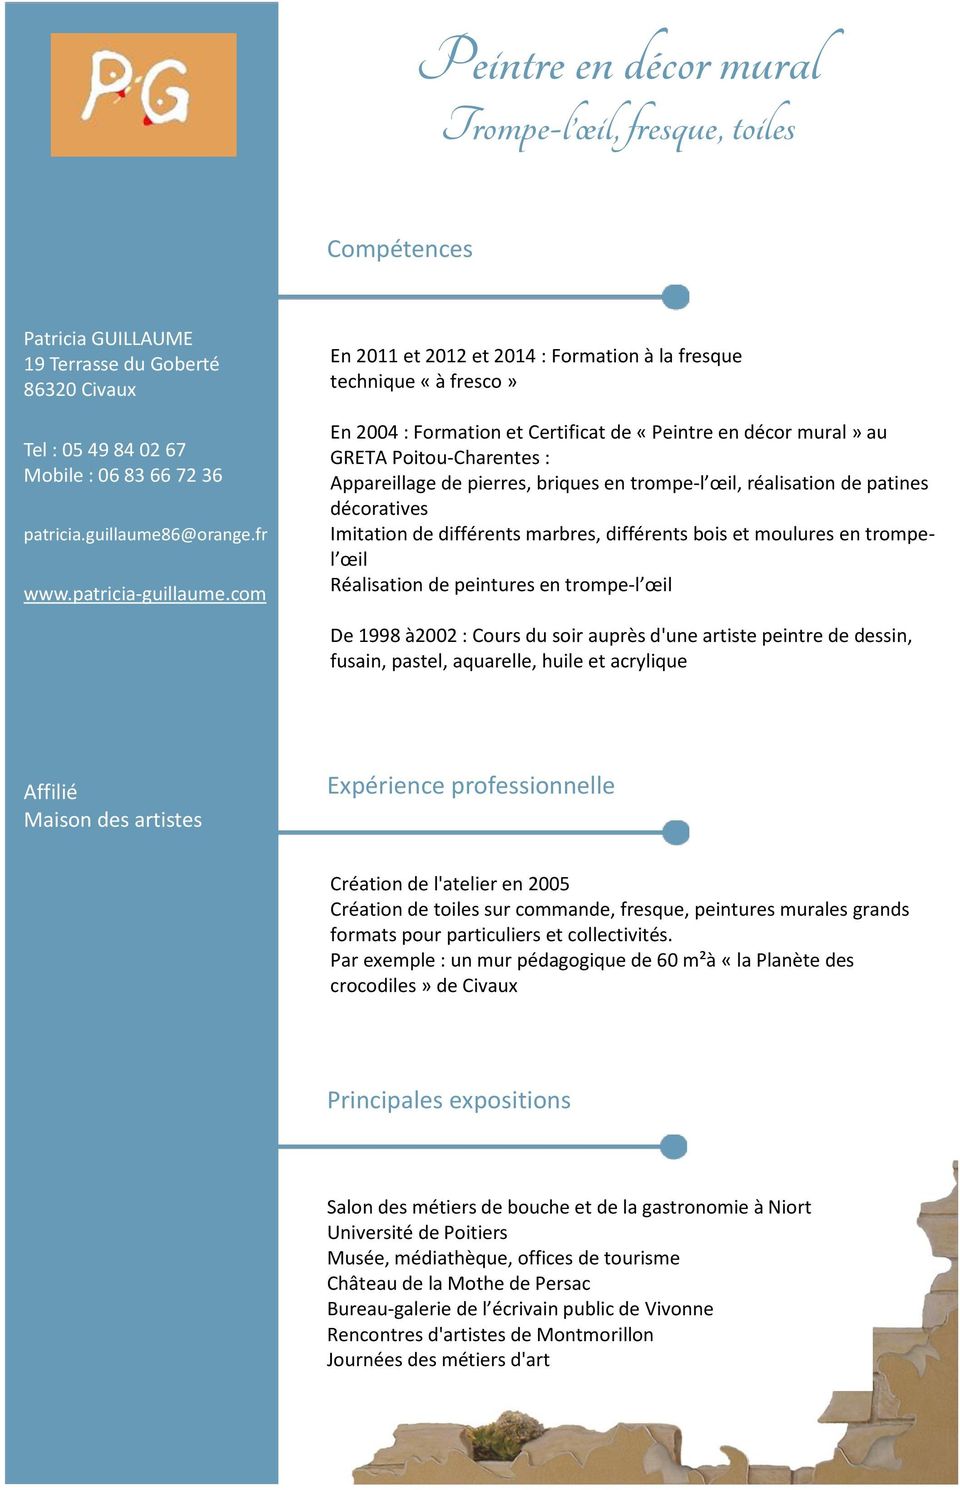 com En 2011 et 2012 et 2014 : Formation à la fresque technique «à fresco» En 2004 : Formation et Certificat de «Peintre en décor mural» au GRETA Poitou-Charentes : Appareillage de pierres, briques en